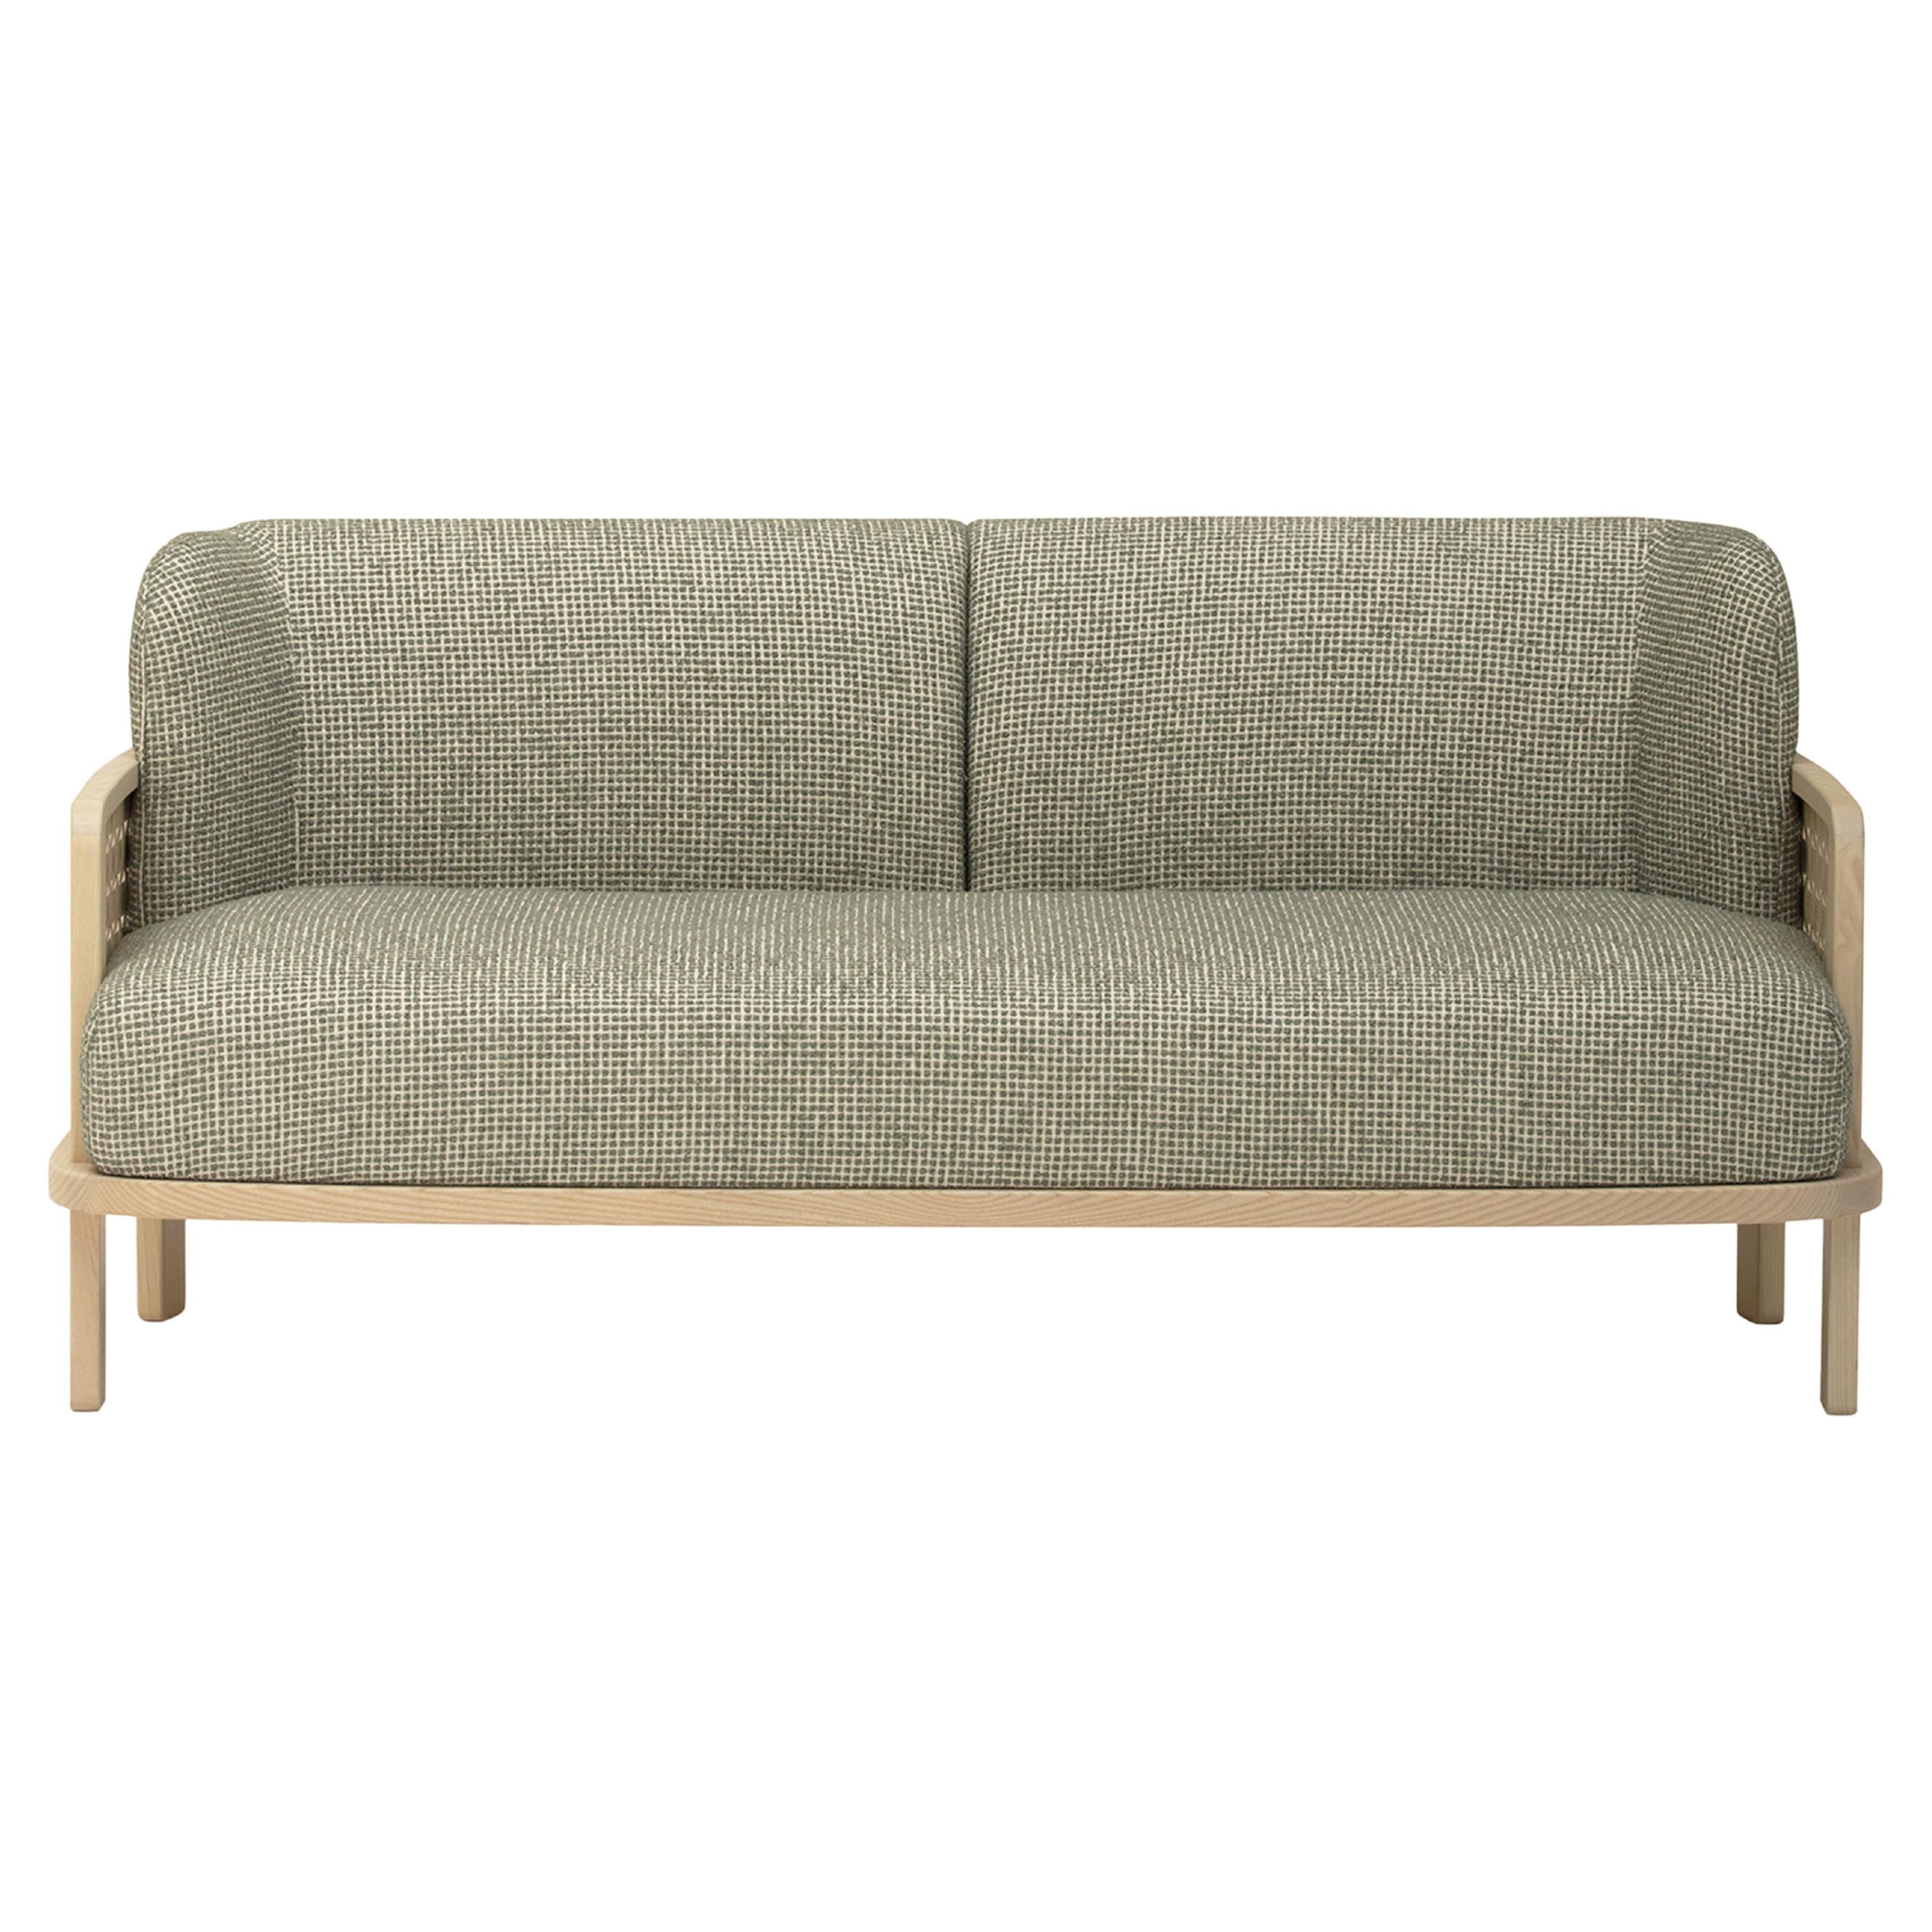 Raquette 181 Green Sofa by Cristina Celestino